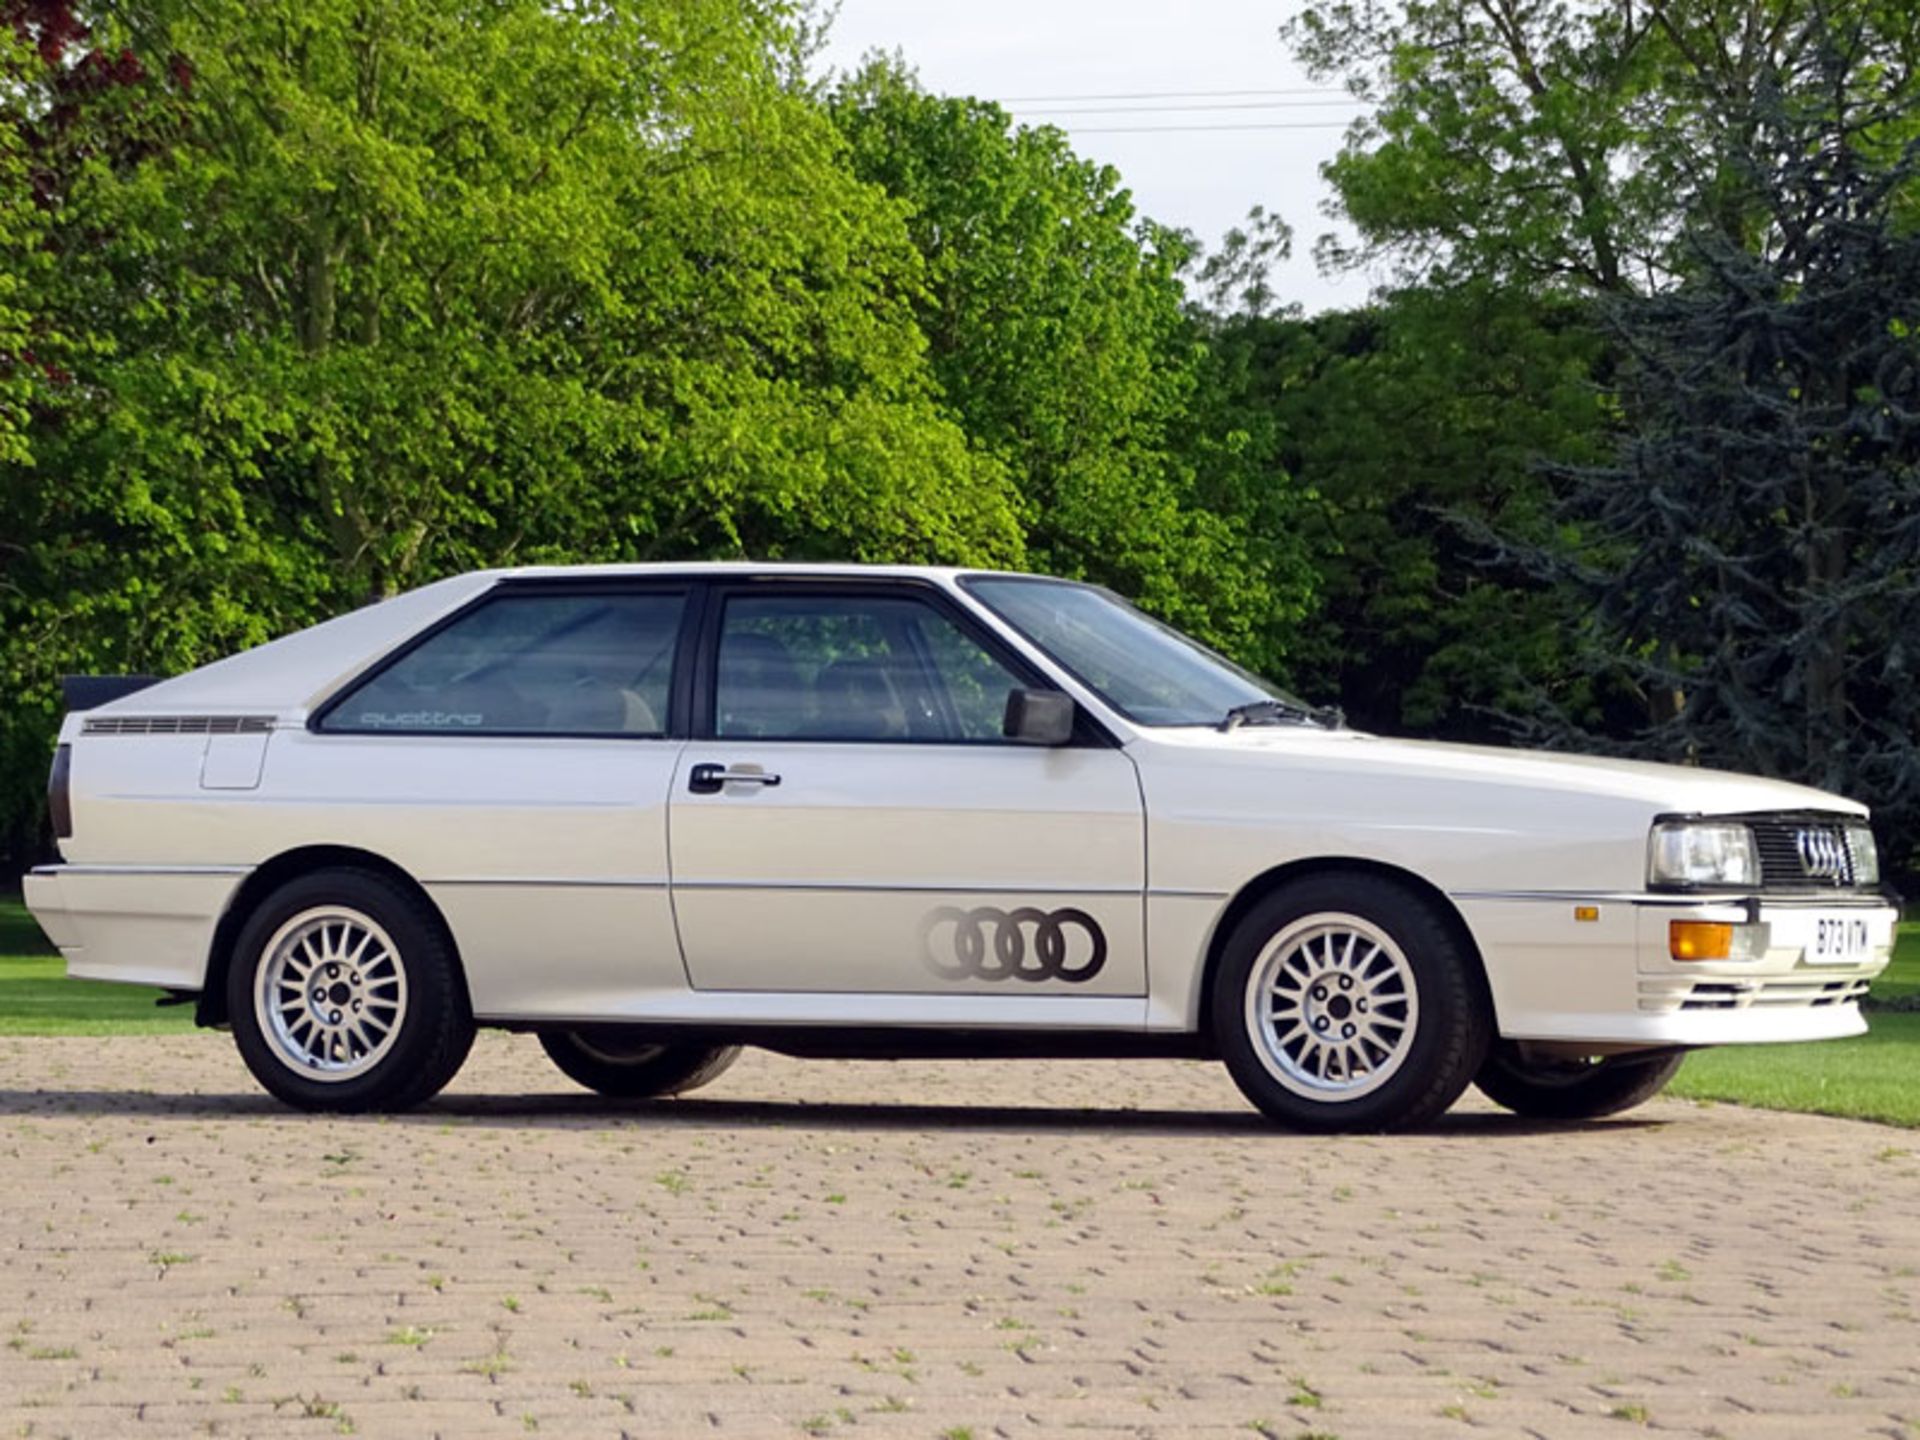 1984 Audi Quattro - Image 2 of 8